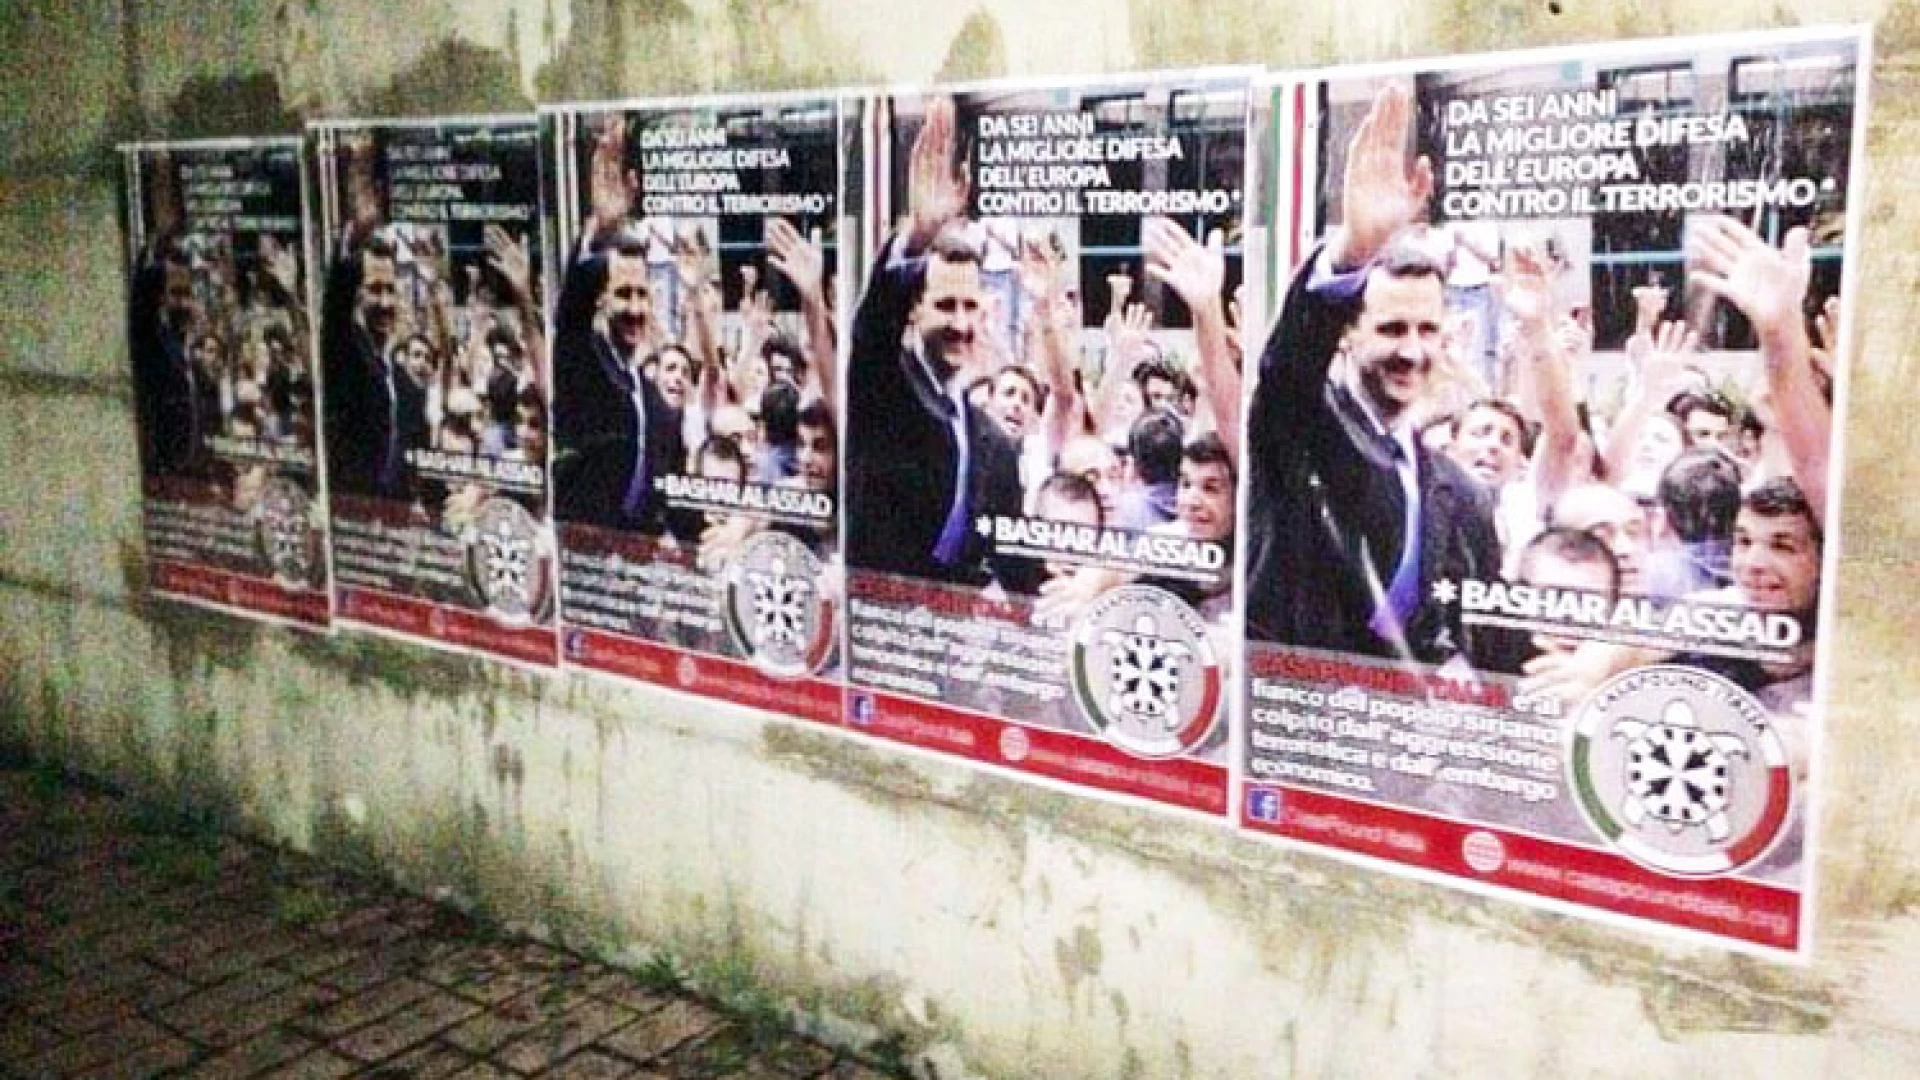 Siria, in 90 città italiane i manifesti pro-Assad di CasaPound: “da cinque anni la migliore difesa dell’Europa contro il terrorismo”.